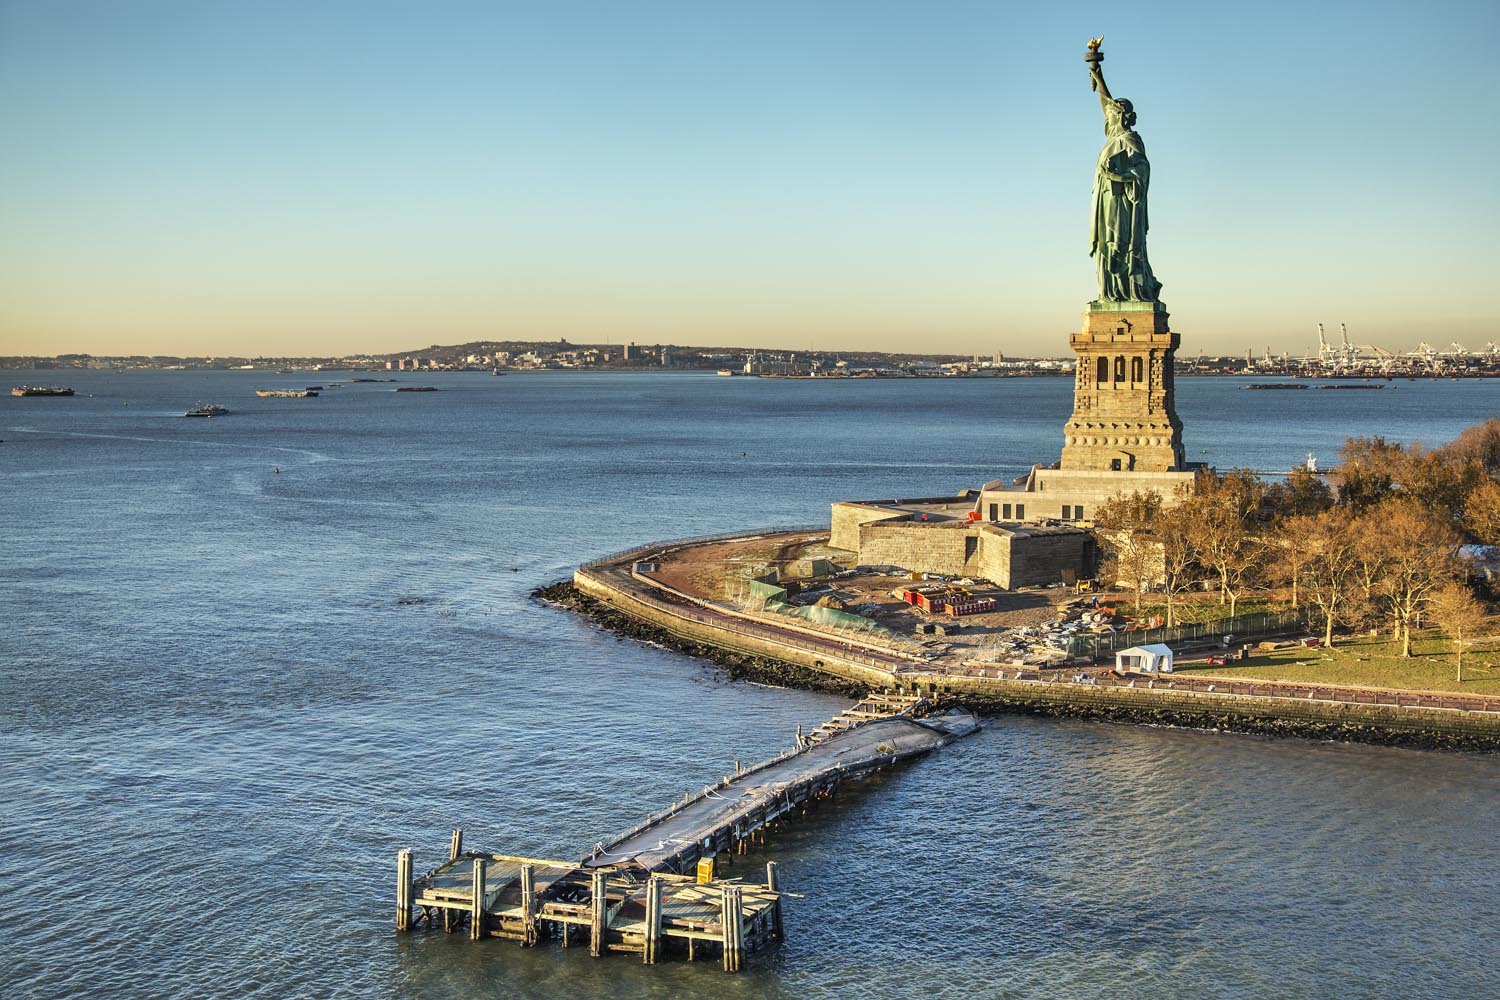 Image: Liberty Island, N.Y.